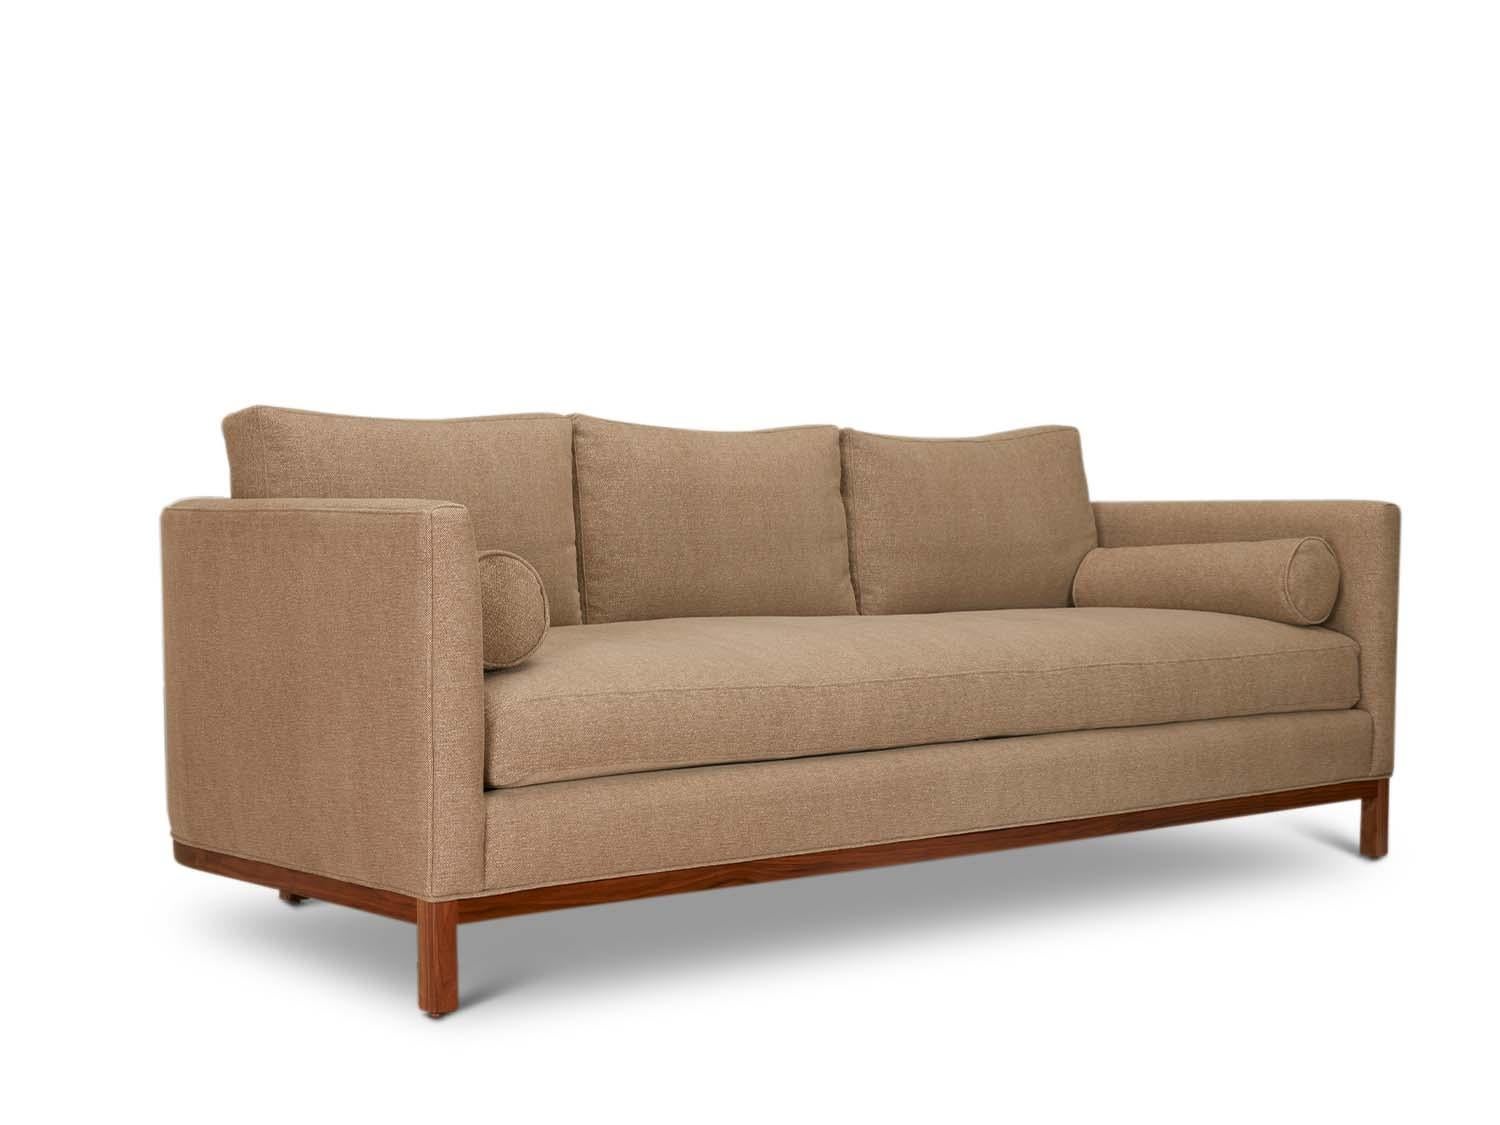 Mid-Century Modern Curved Back Sofa by Lawson-Fenning